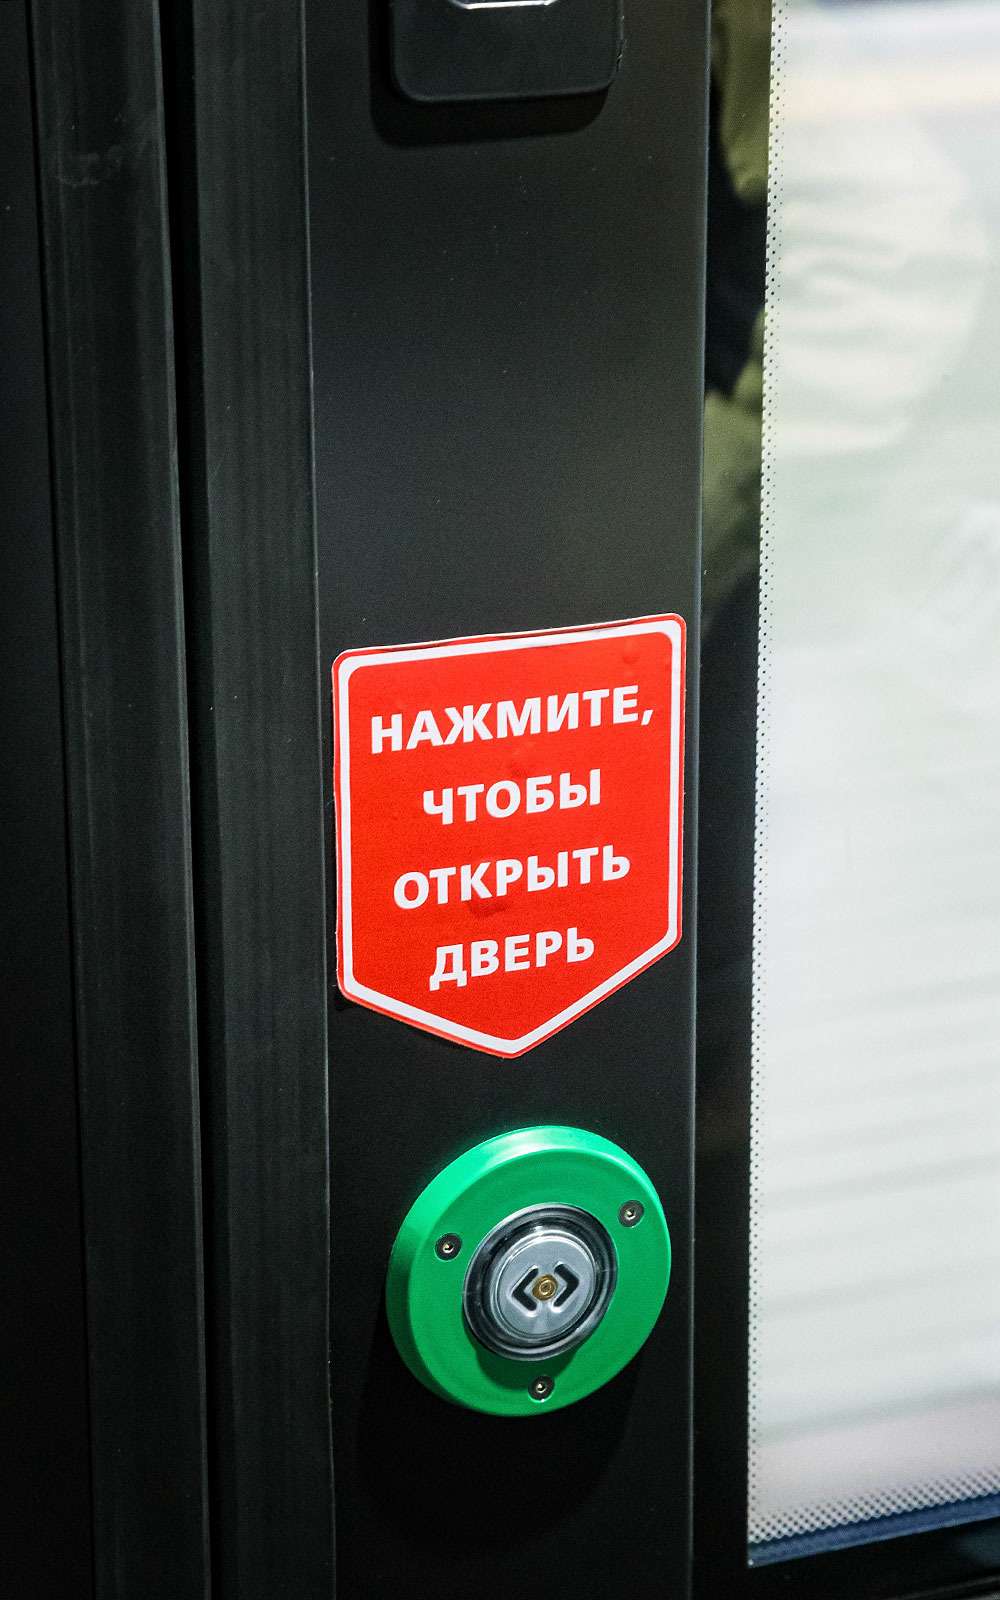 Хотите выйти – нажмите кнопочку. Впрочем, это вам напомнят и по-русски, и по-английски.